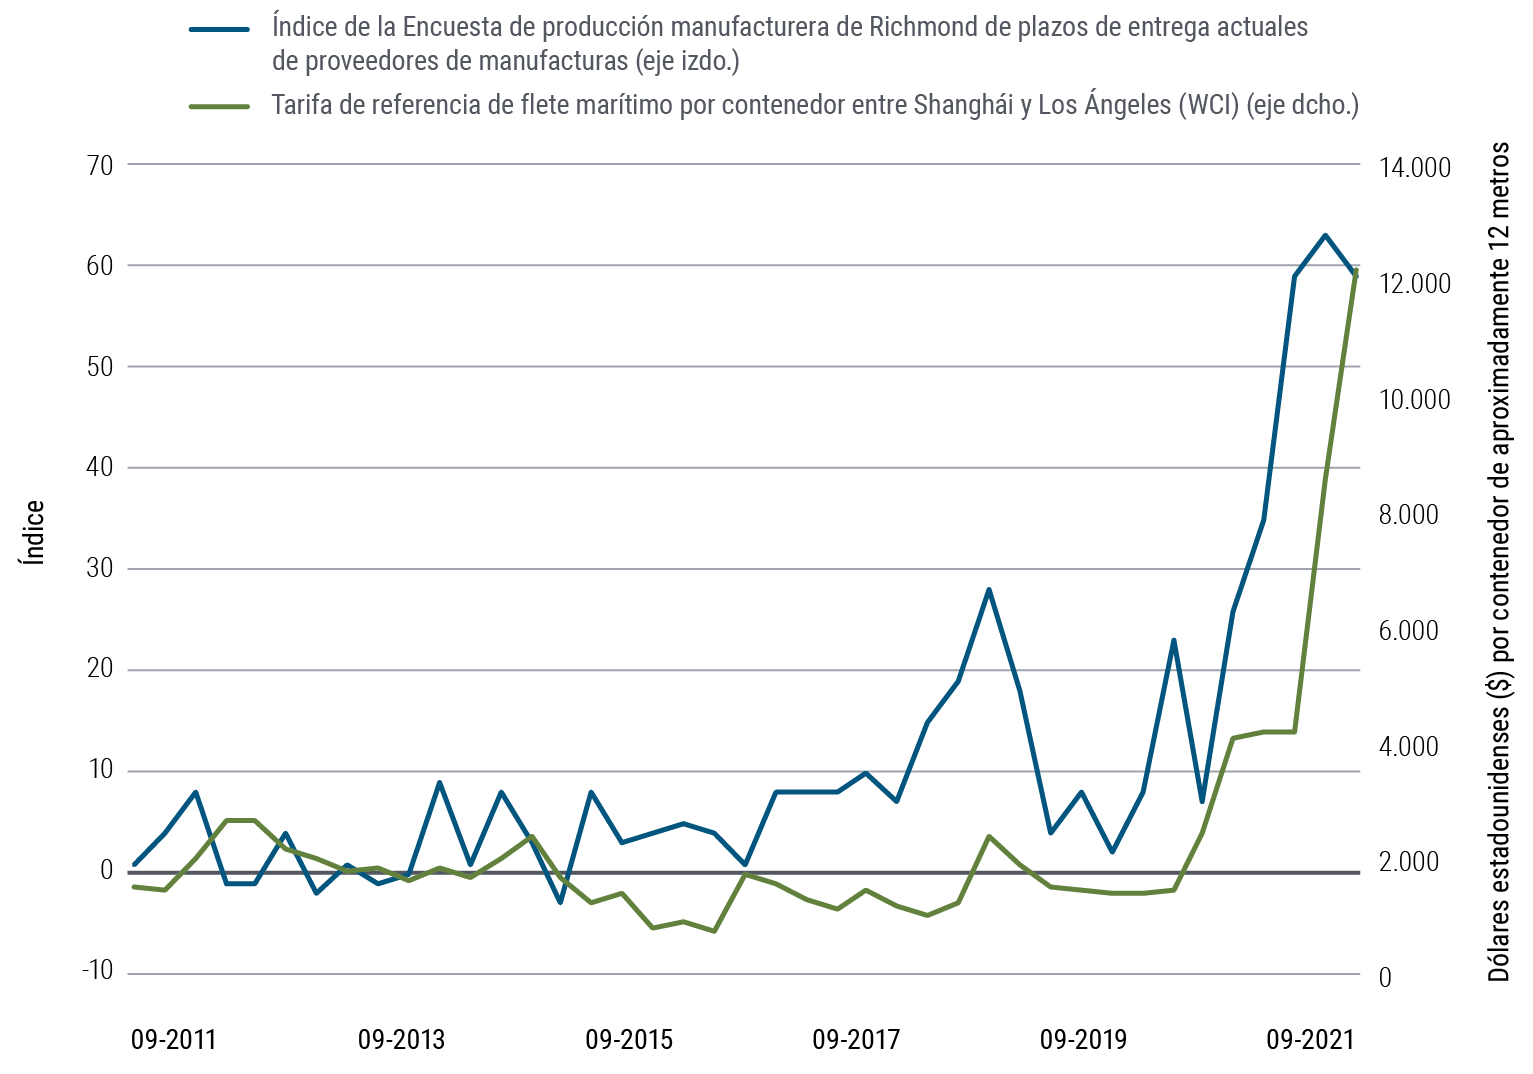 La Figura 3 es una gráfica de líneas con dos conjuntos de datos que abarcan de septiembre de 2011 a septiembre de 2021. Como puede observarse en ella, el índice de la Encuesta de producción manufacturera de Richmond de plazos de entrega actuales de proveedores de manufacturas correspondiente al período pasó de 1 a 59, con una serie de picos y valles y significativos incrementos a partir de 2020, hasta situarse en 63 en junio de 2021. La tarifa de referencia de flete marítimo por contenedor entre Shanghái y Los Ángeles (WCI) pasó de $1.524 en septiembre de 2011 a $12.172 en septiembre de 2021, y el incremento más significativo se registró en 2021. Dicha tarifa representa el costo promedio del transporte de un contenedor estándar de aproximadamente 12 metros entre Shangái y Los Angeles.